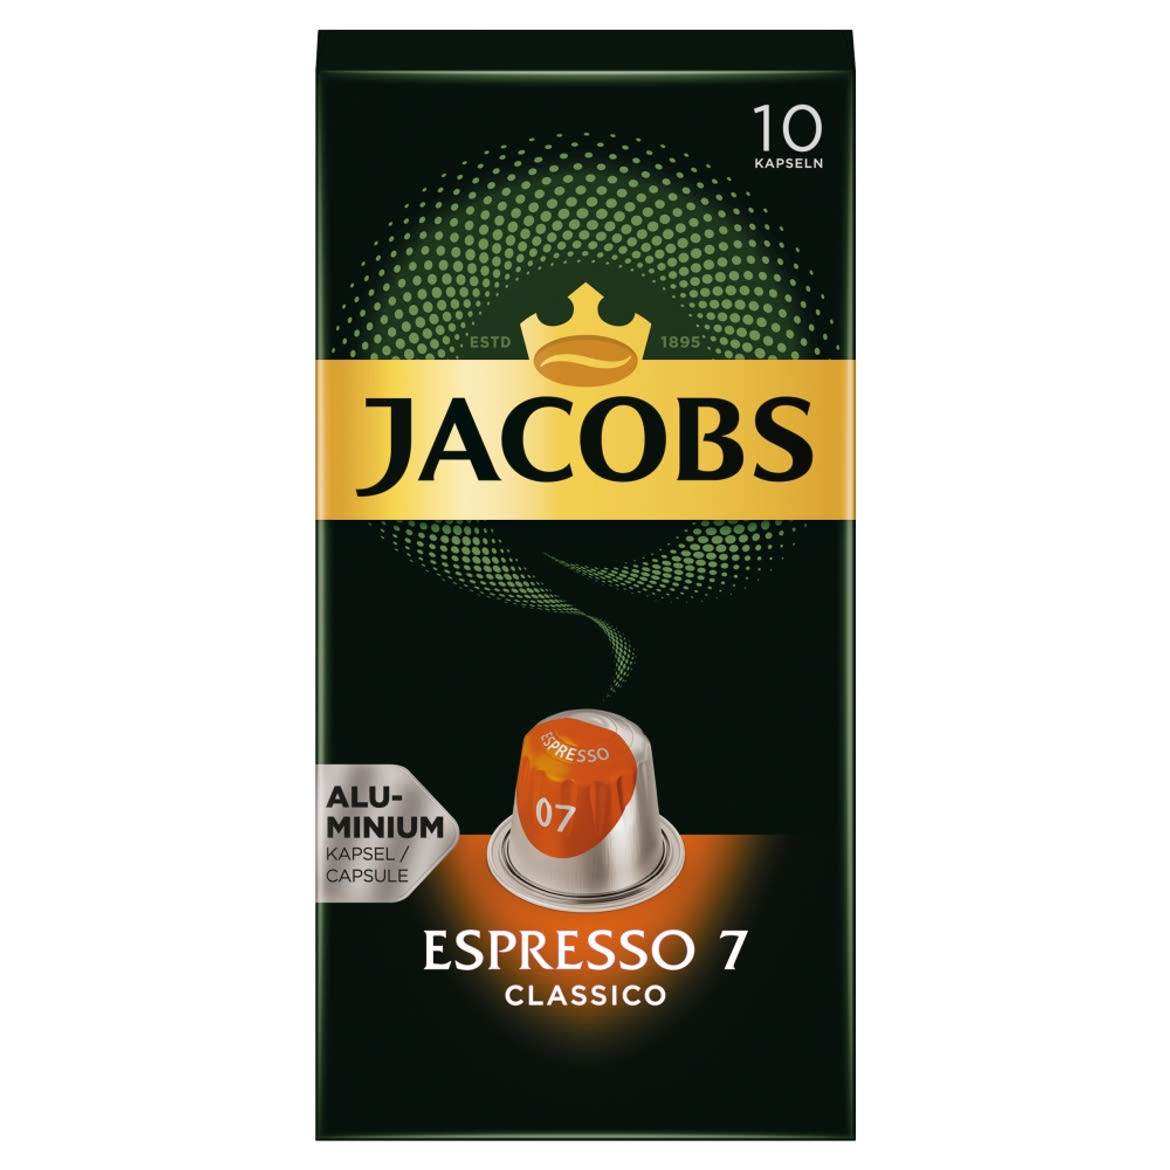 Jacobs Espresso 7 Classico őrölt-pörkölt kávé kapszulában